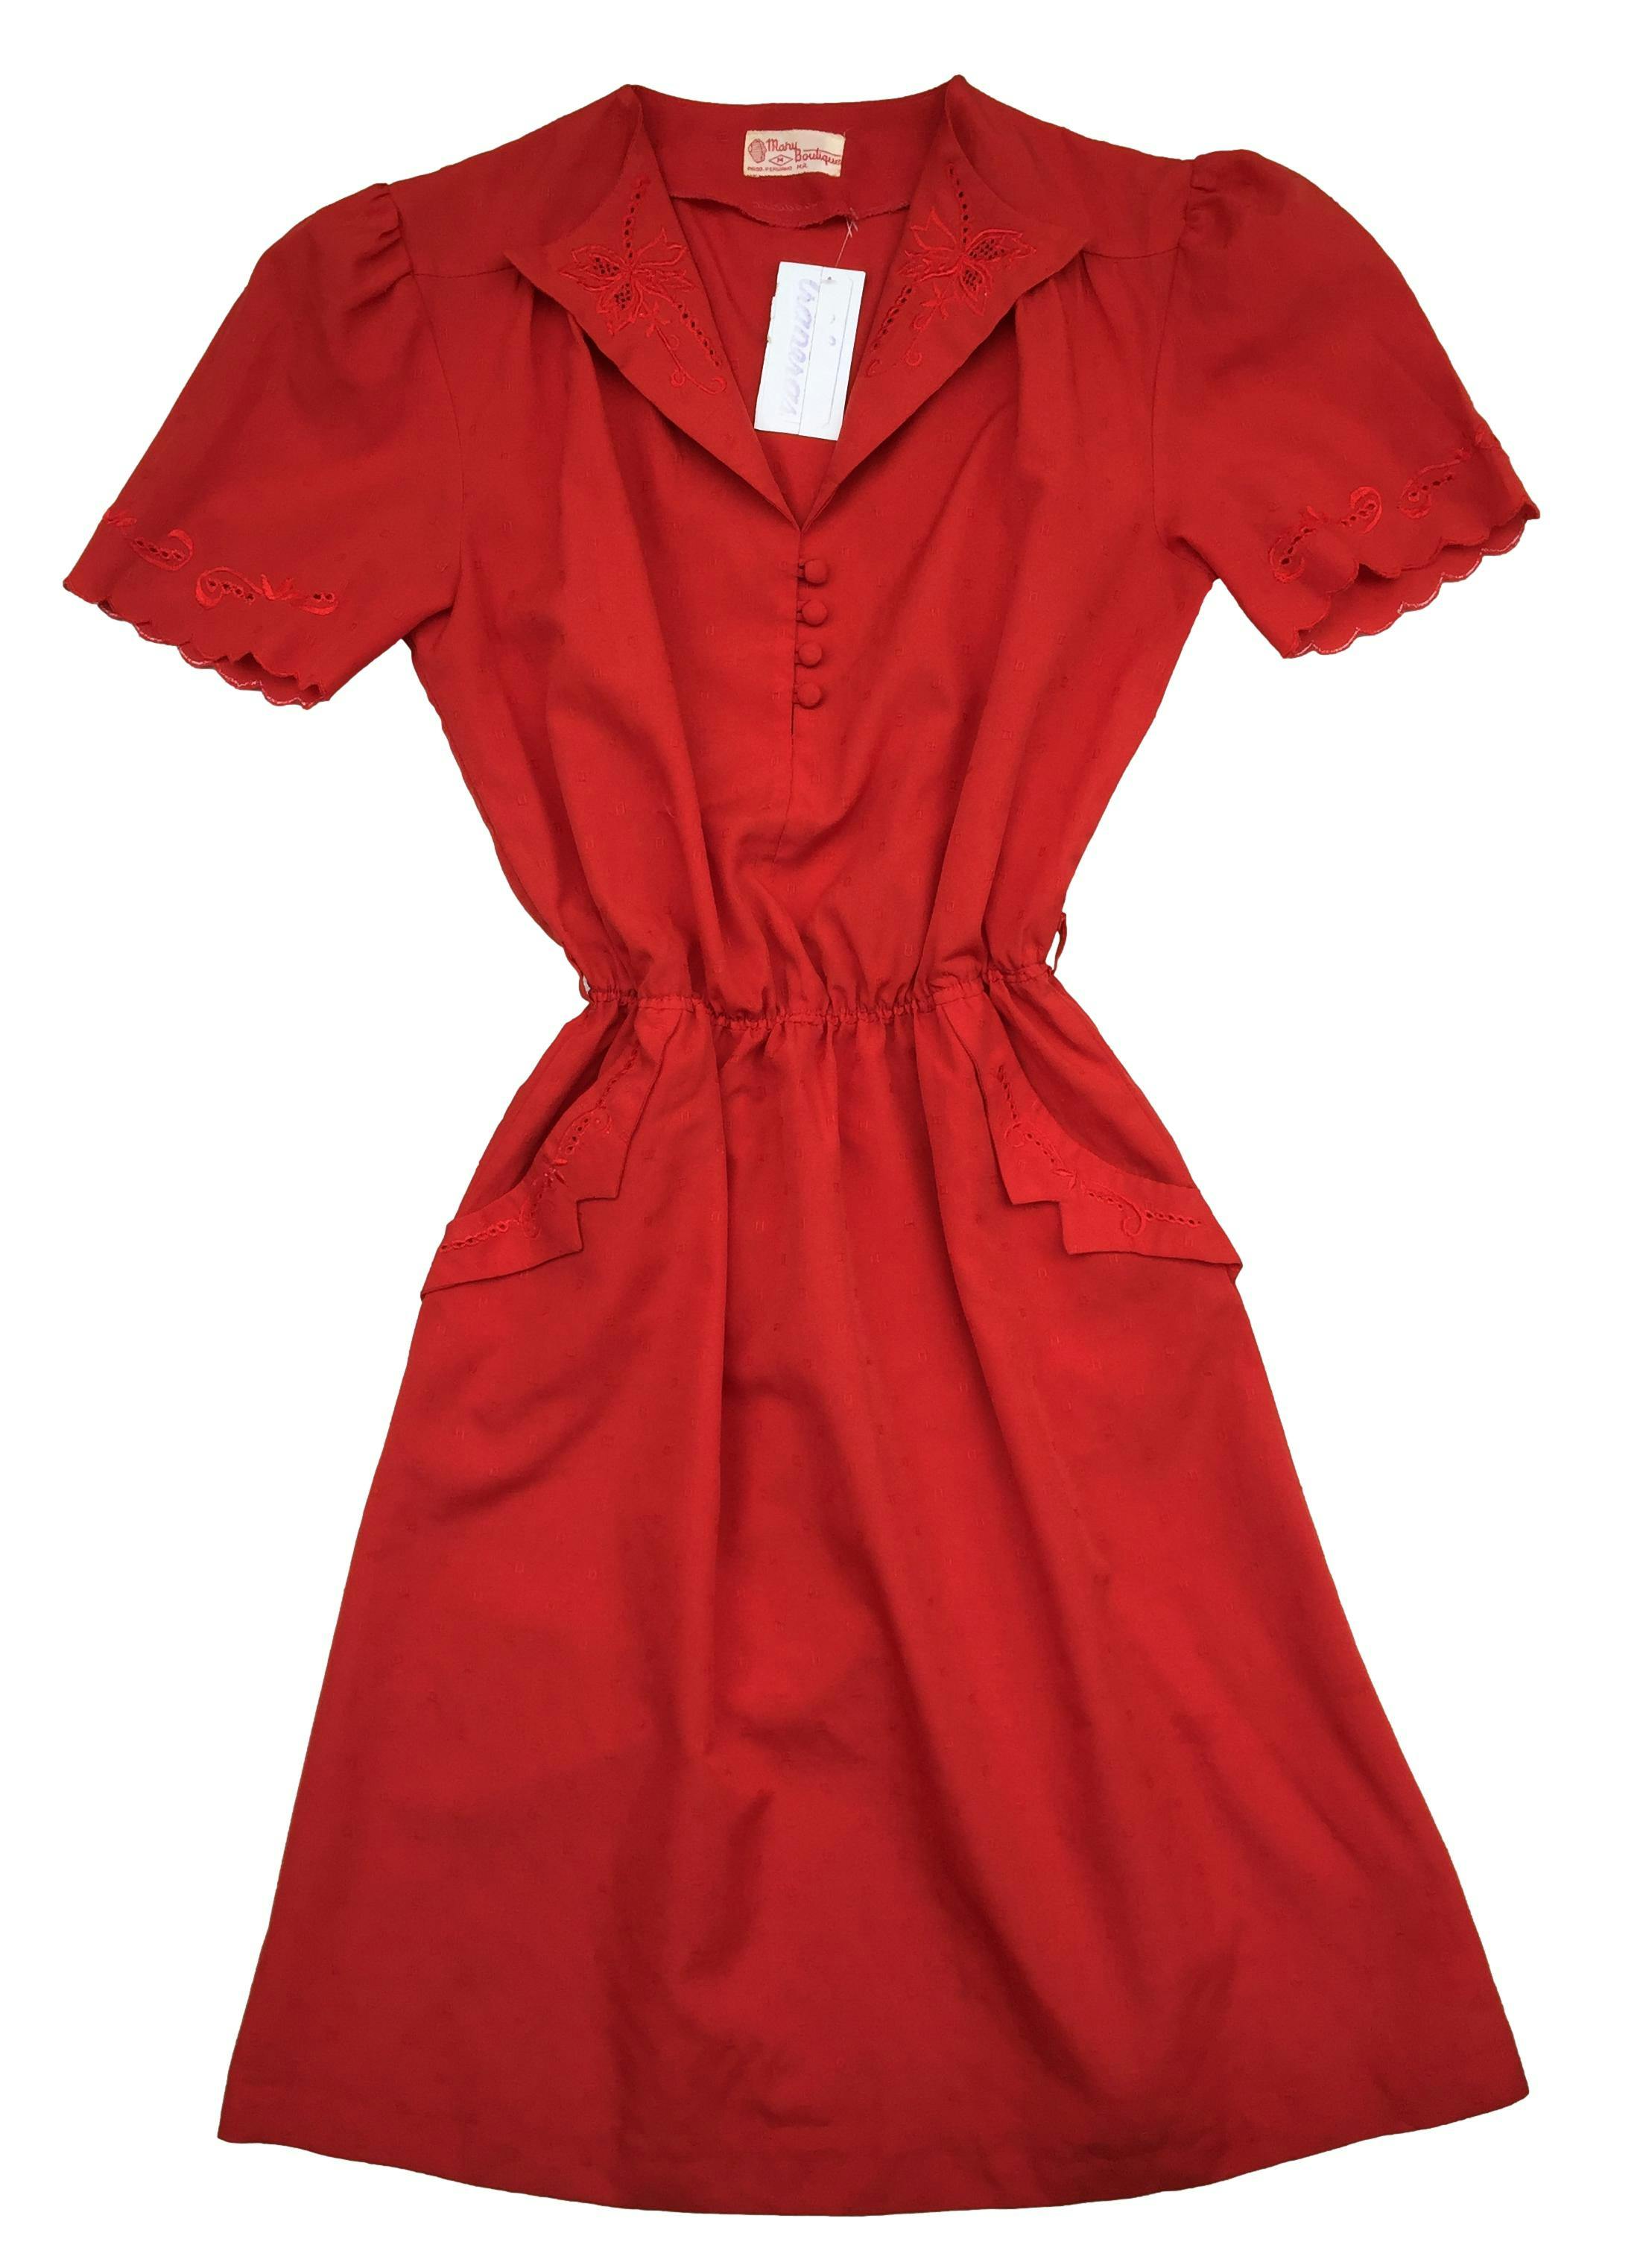 Vestido rojo vintage con detalles bordados, cuello camisero, botones en escote, elástico en cintura. Busto 96cm, Largo 100cm Las Traperas